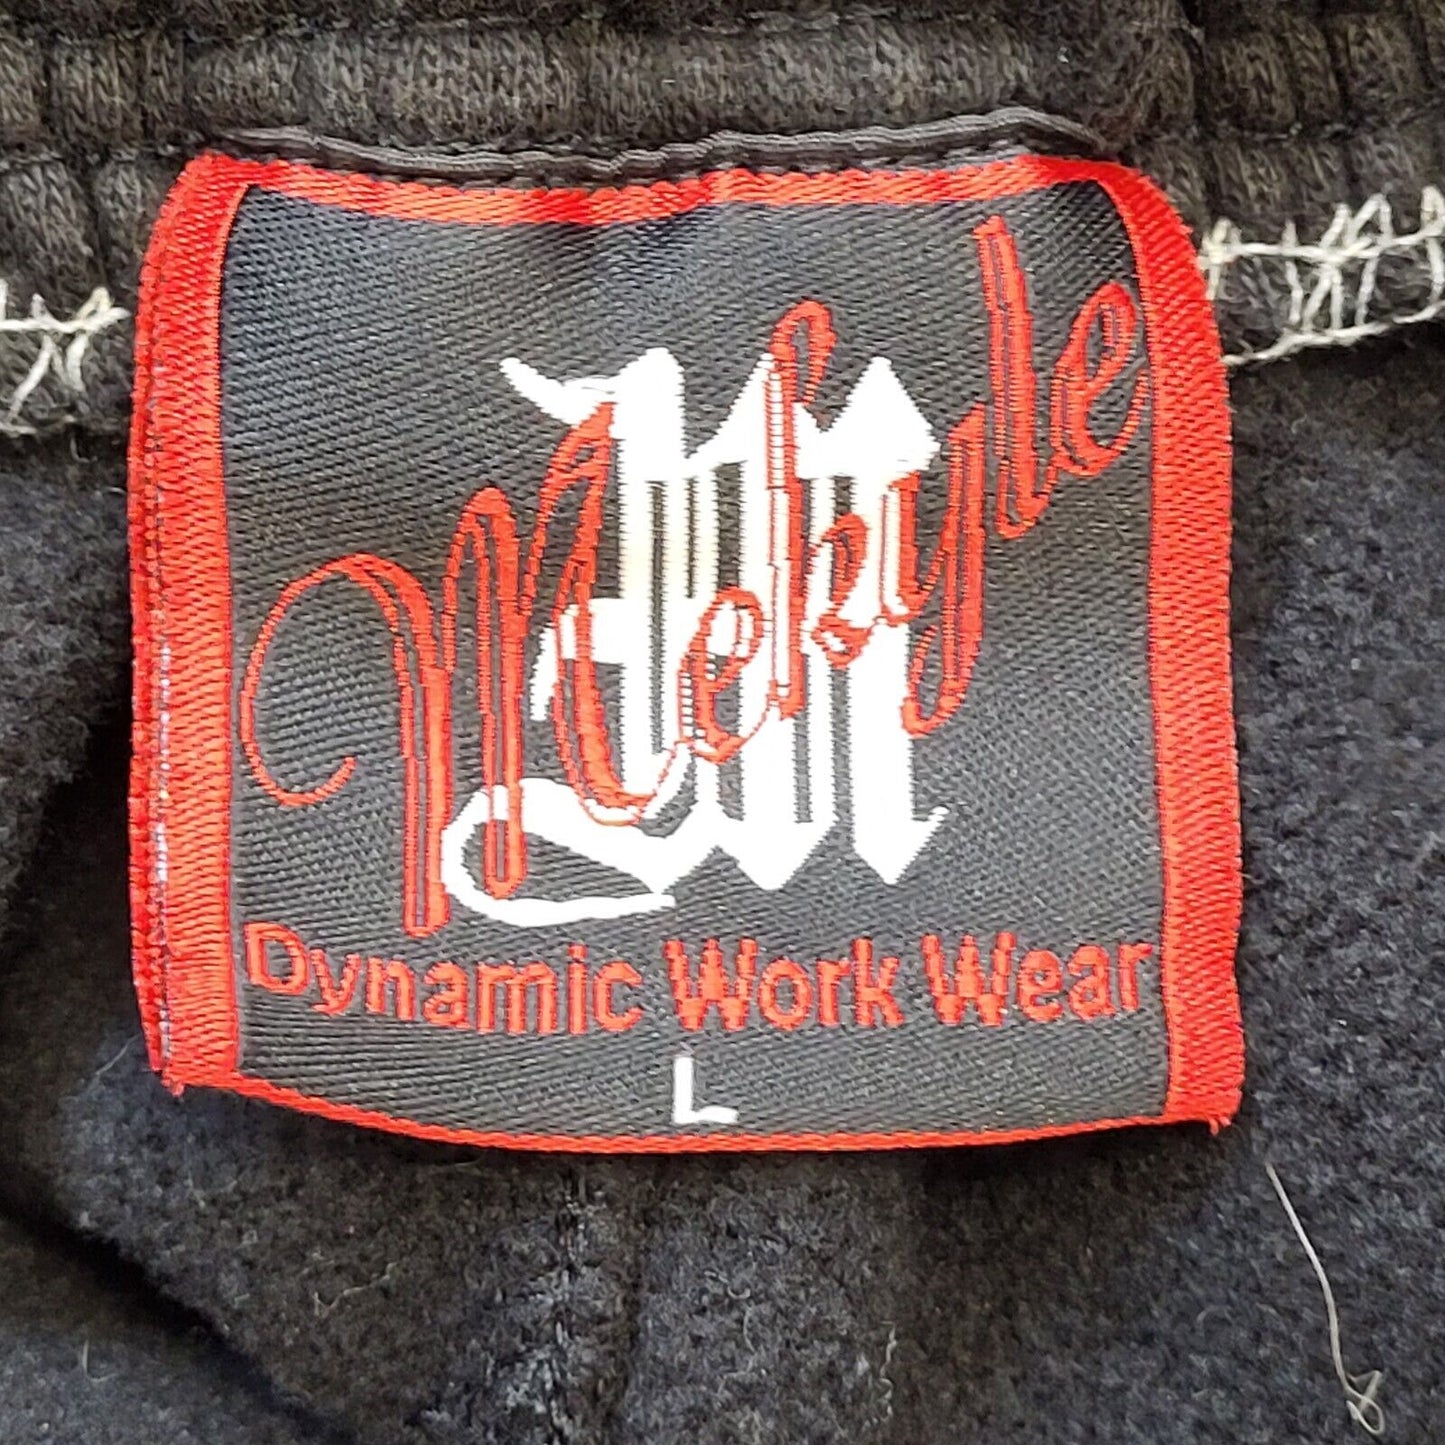 Dynamic Work Wear Trousers (L)